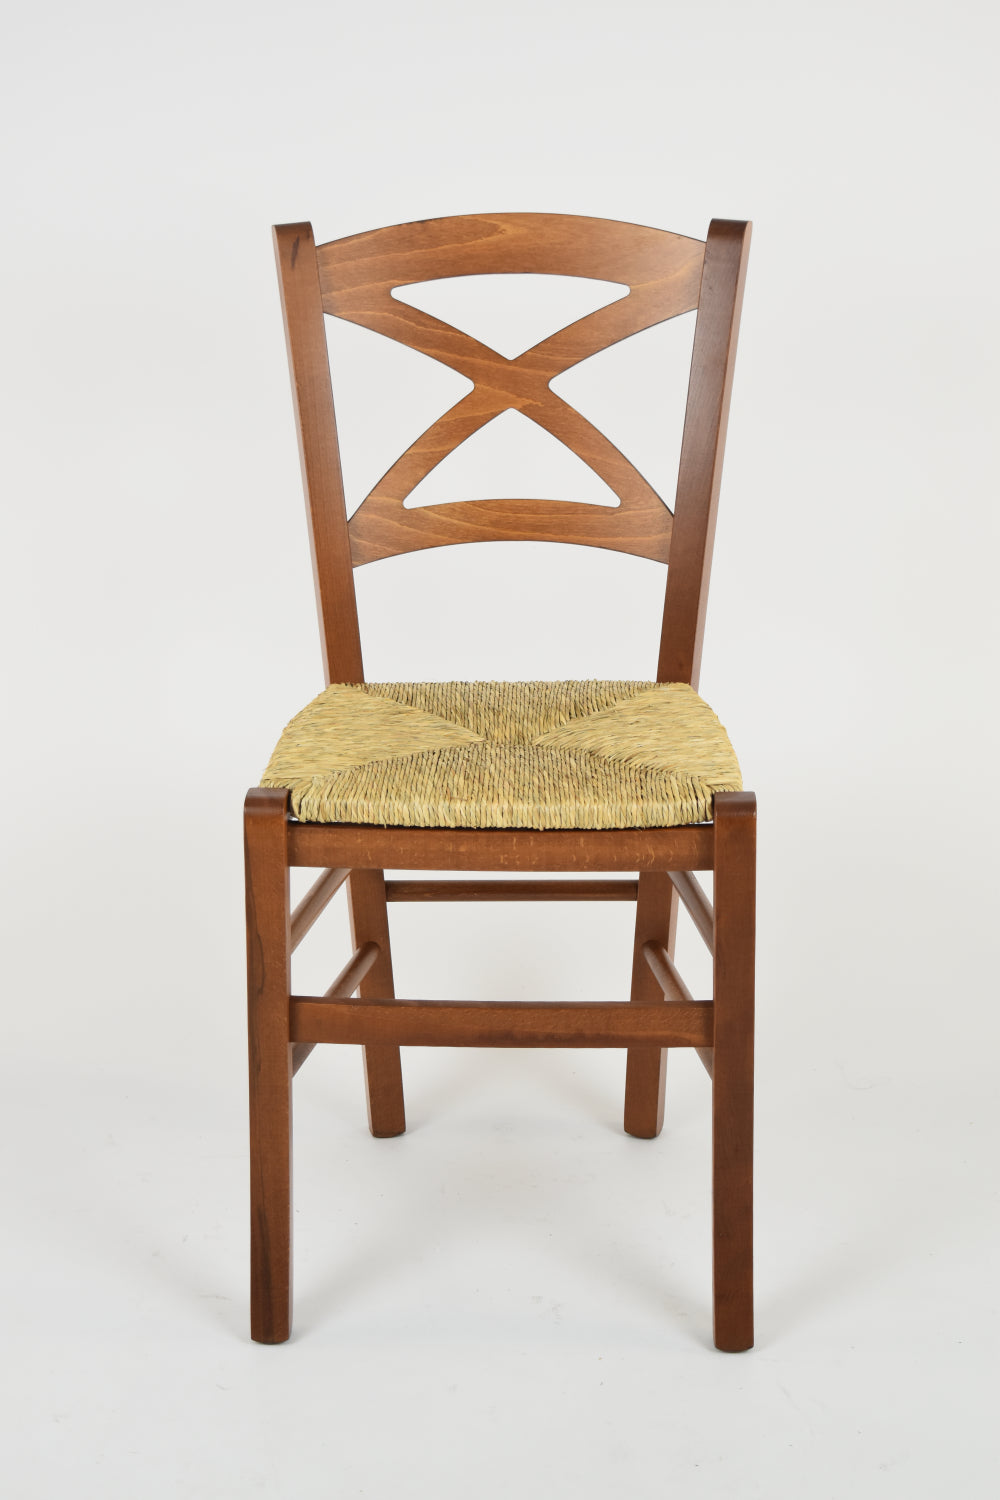 Tommychairs - Set 4 sillas de Cocina y Comedor Cross, Estructura en Madera de Haya Color Nuez Claro y Asiento en Paja